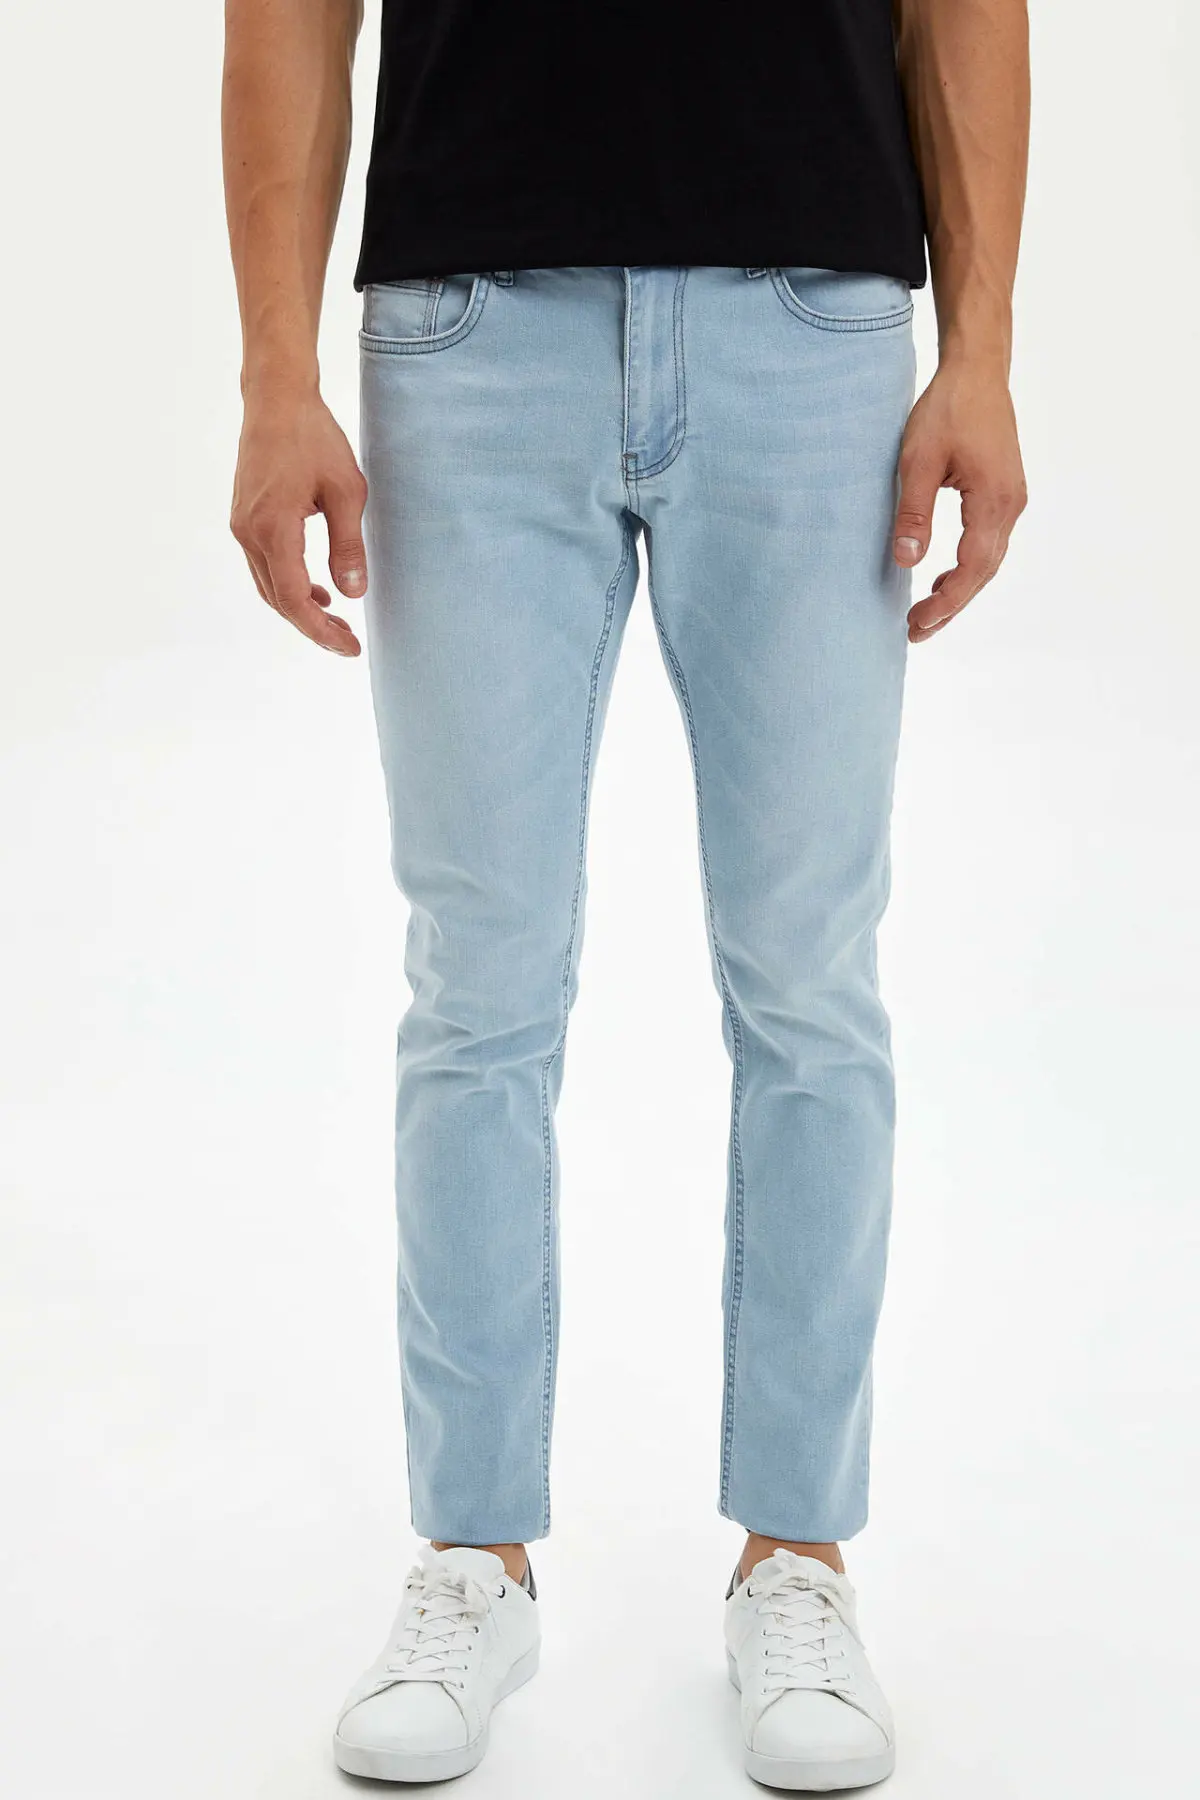 DeFacto Fashion Men's Simple Light Blue Stretch Jeans Men Elastic Denim ...